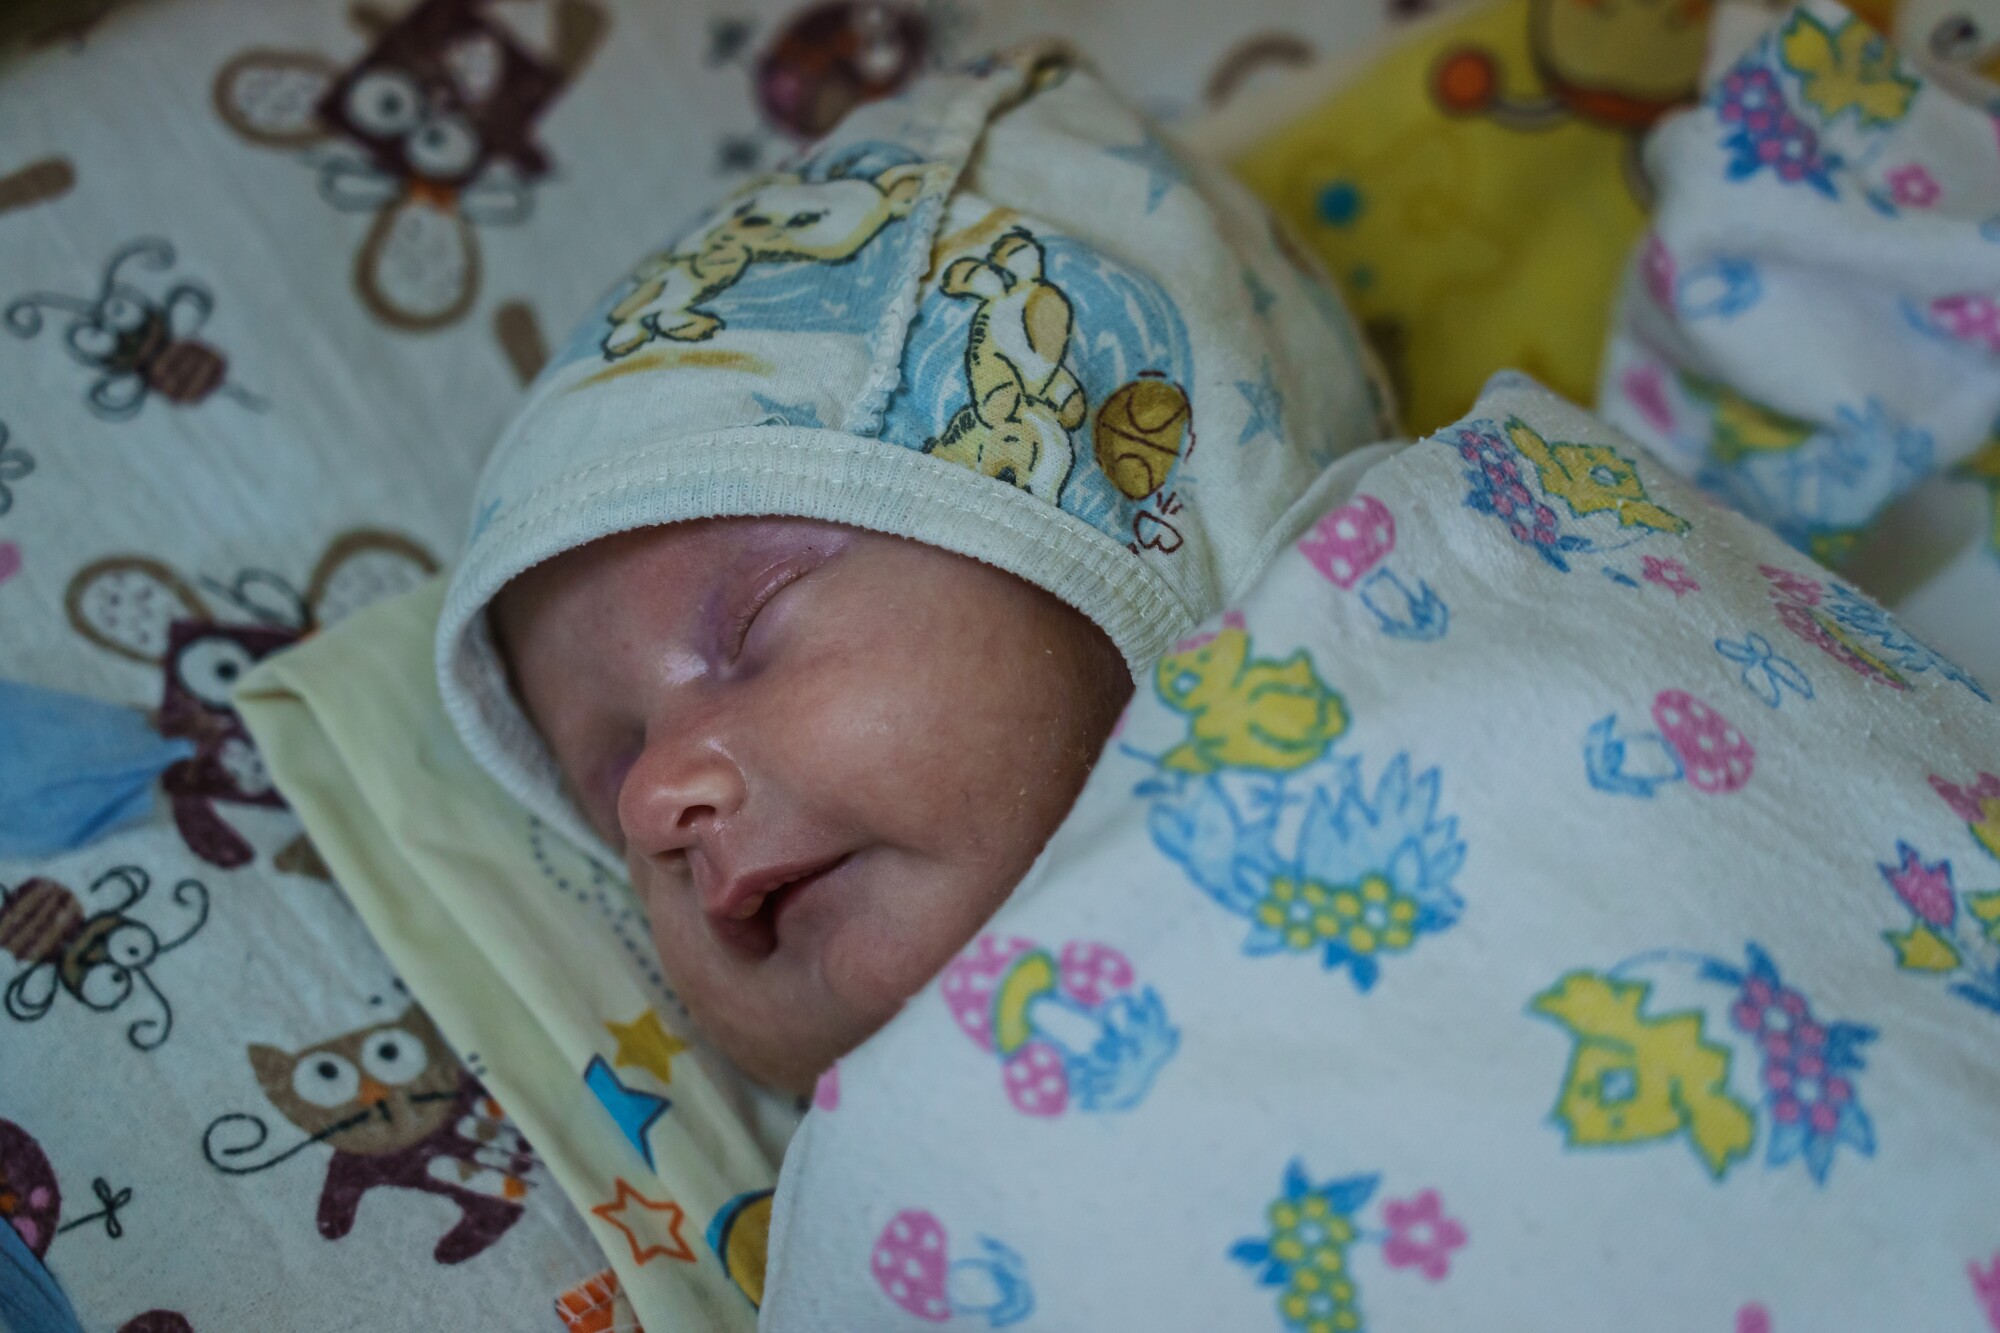 یک نوزاد تازه متولد شده در یک زایشگاه موقت زیرزمینی استراحت می کند.